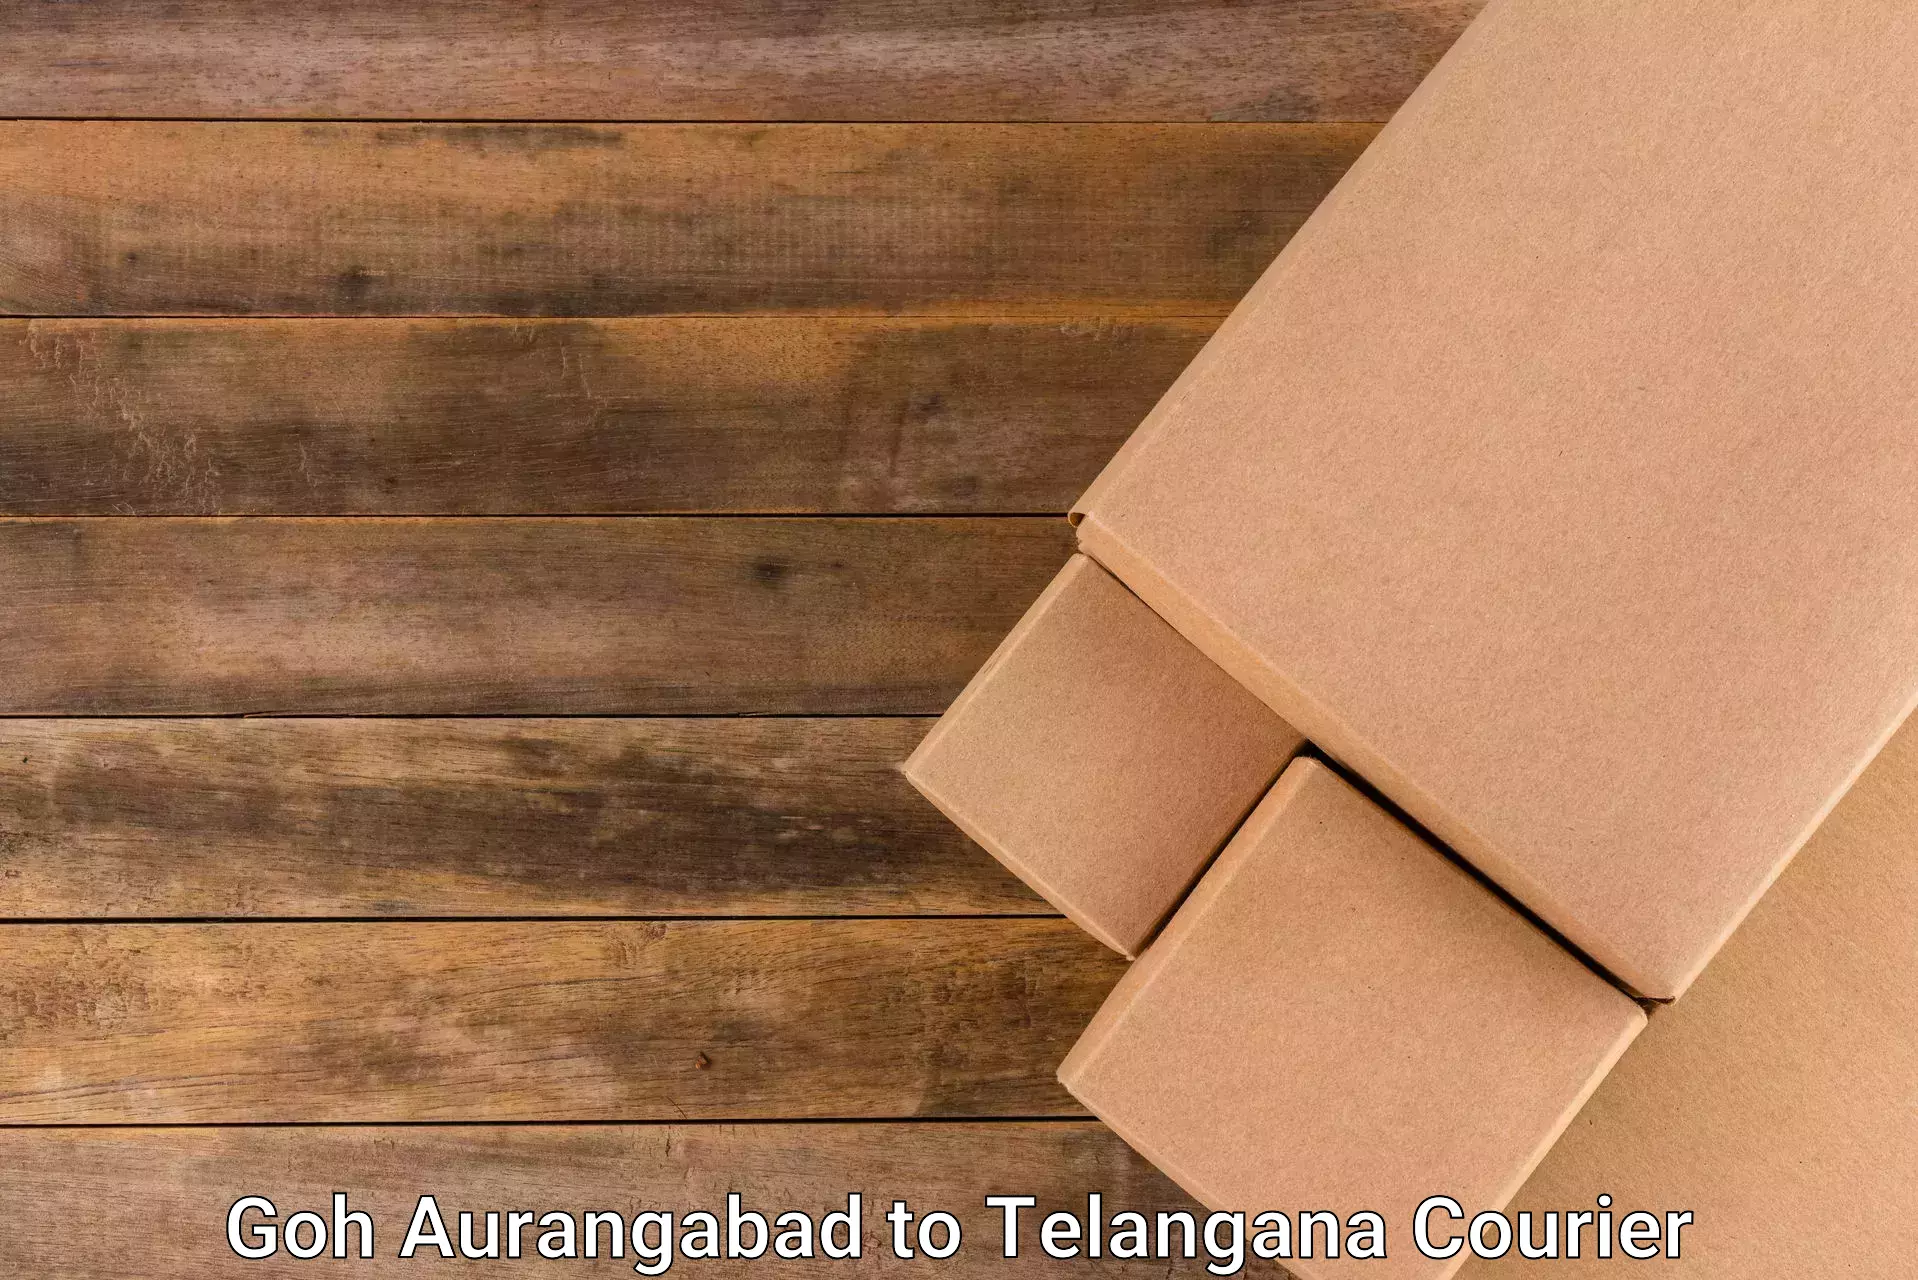 Package forwarding Goh Aurangabad to Dharmapuri Jagtial